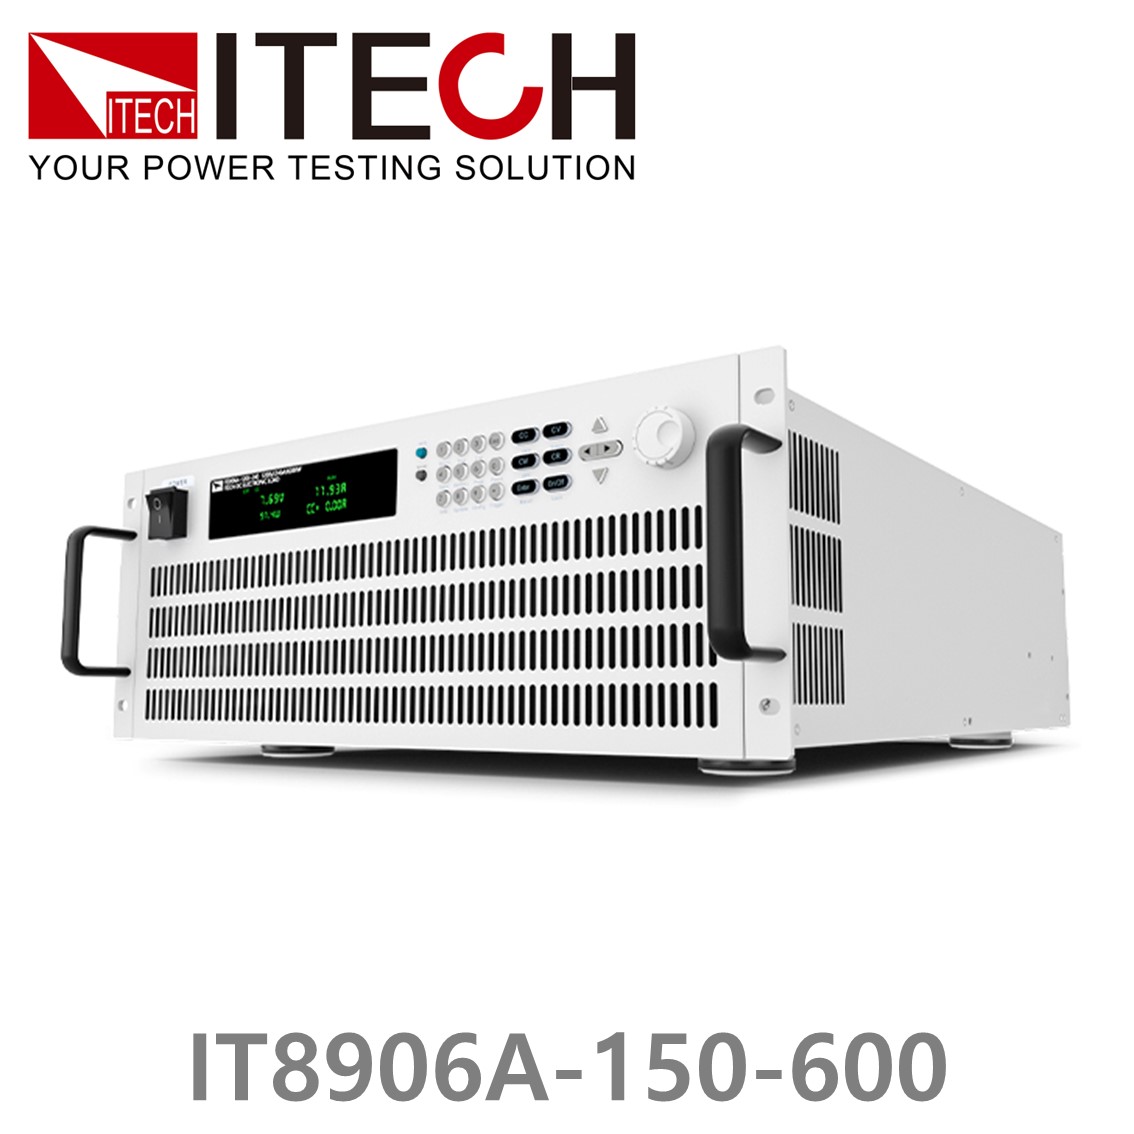 [ ITECH ] IT8906A-150-600  고성능 고전력 DC 전자로드 150V/600A/6kW (4U)